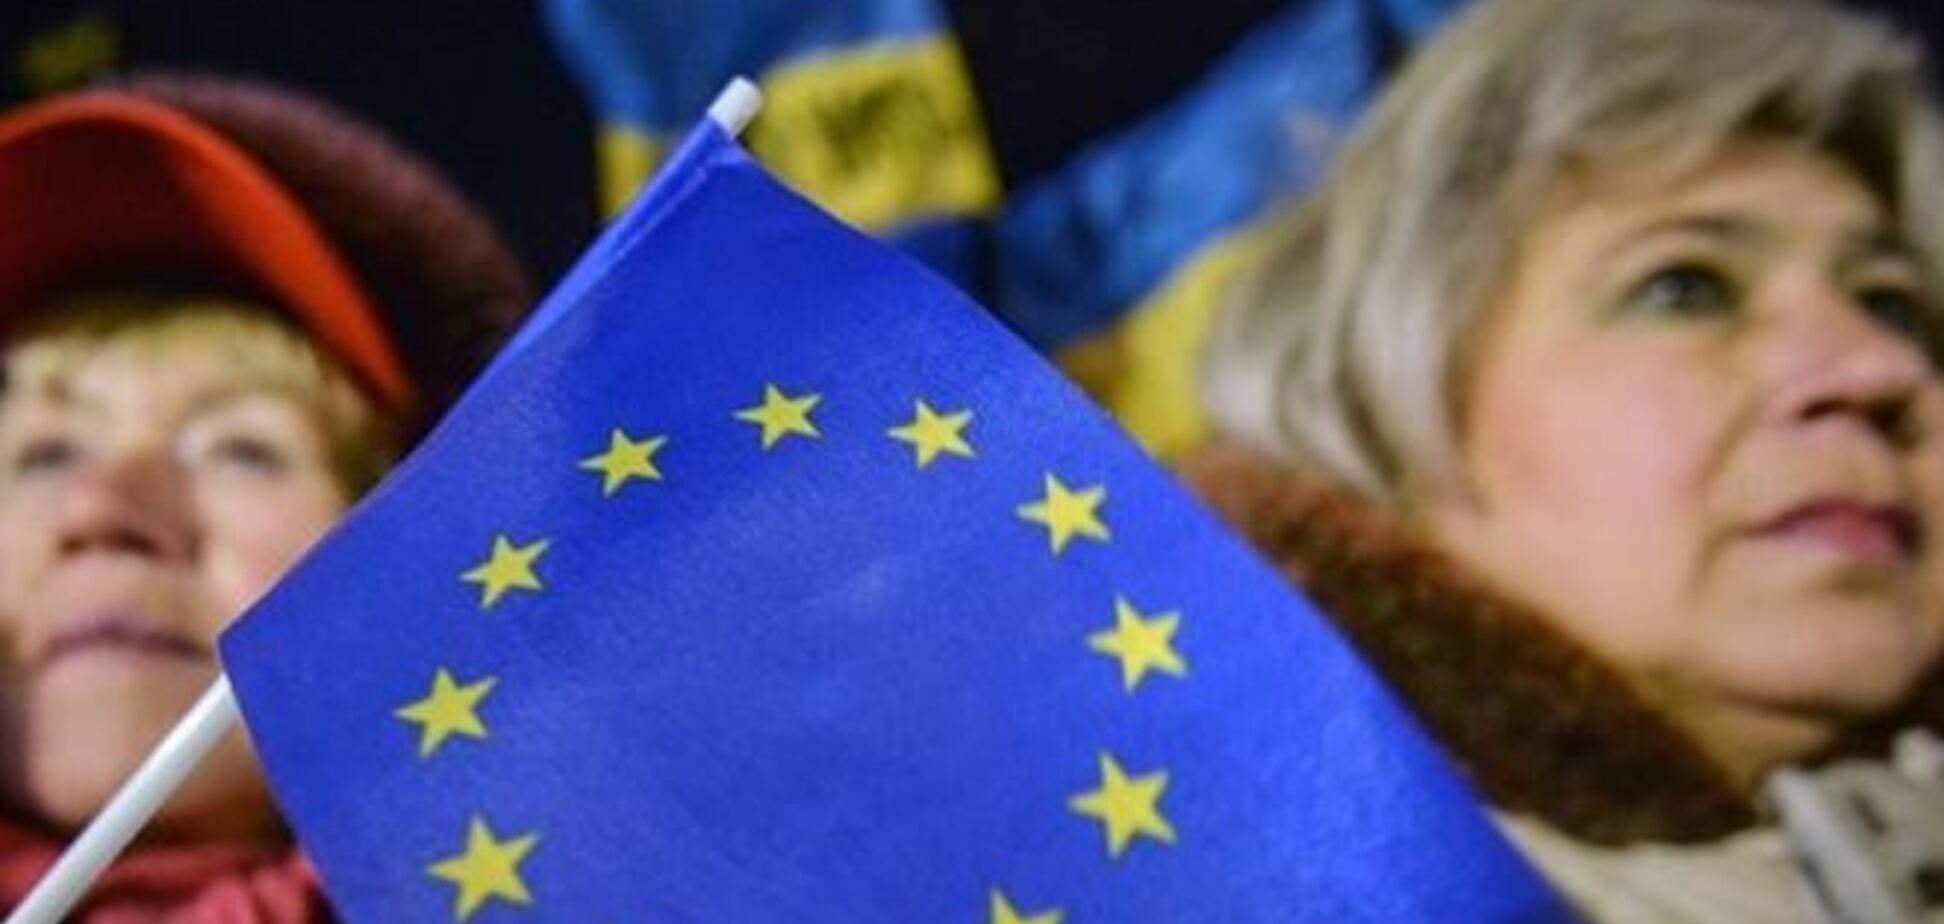 ЕС по-прежнему готов подписать ассоциацию с Украиной